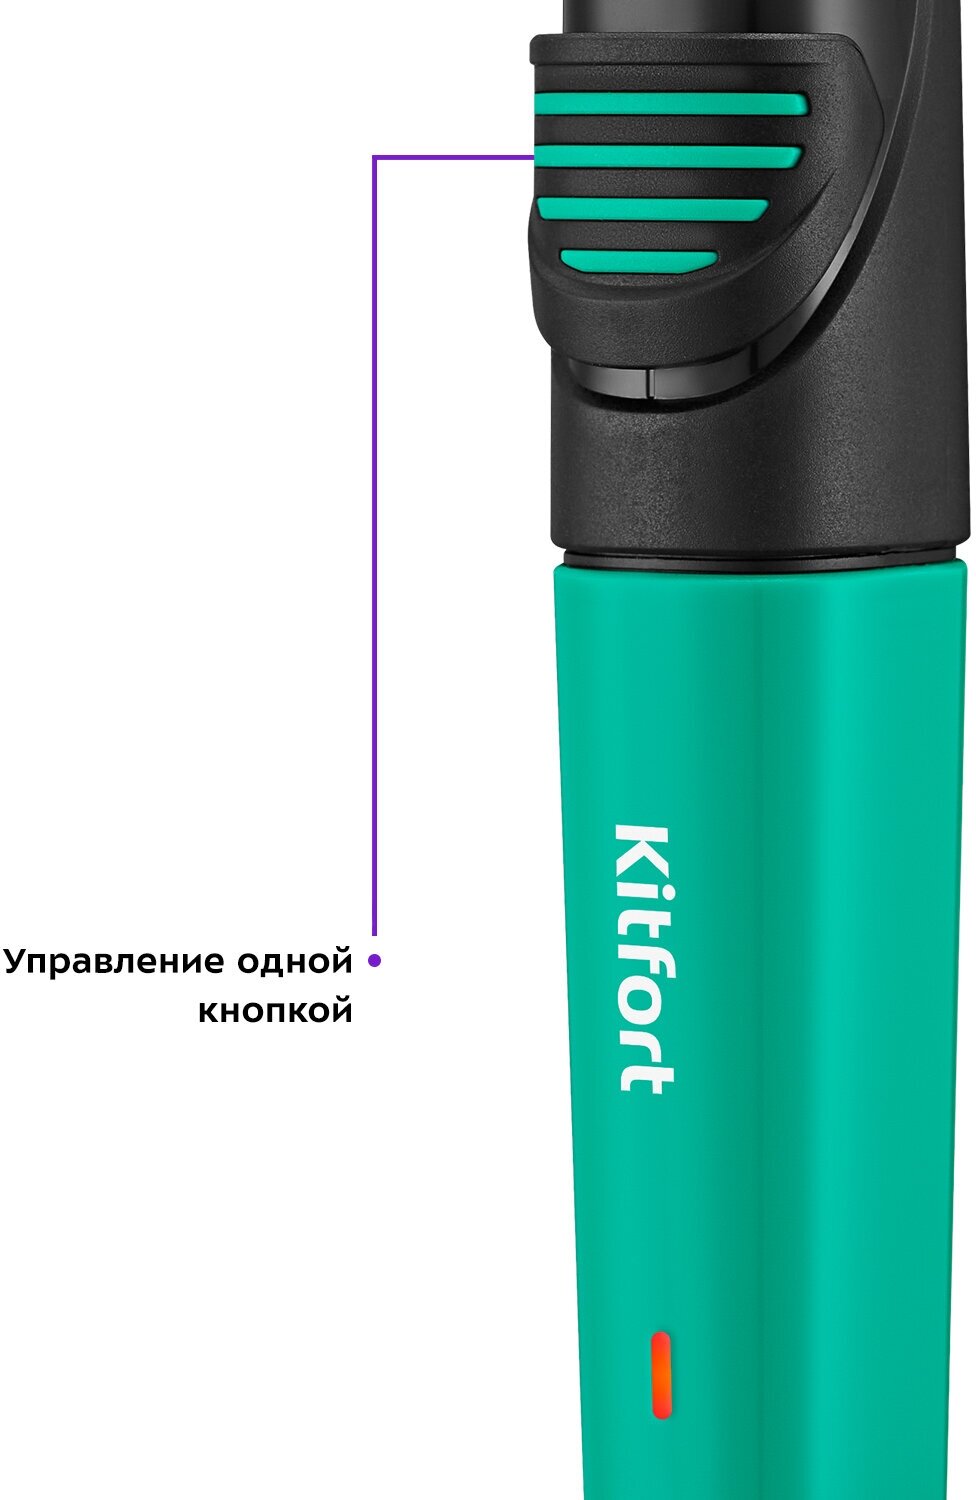 Триммер "3 в 1" Kitfort КТ-3139-2 черно-зеленый